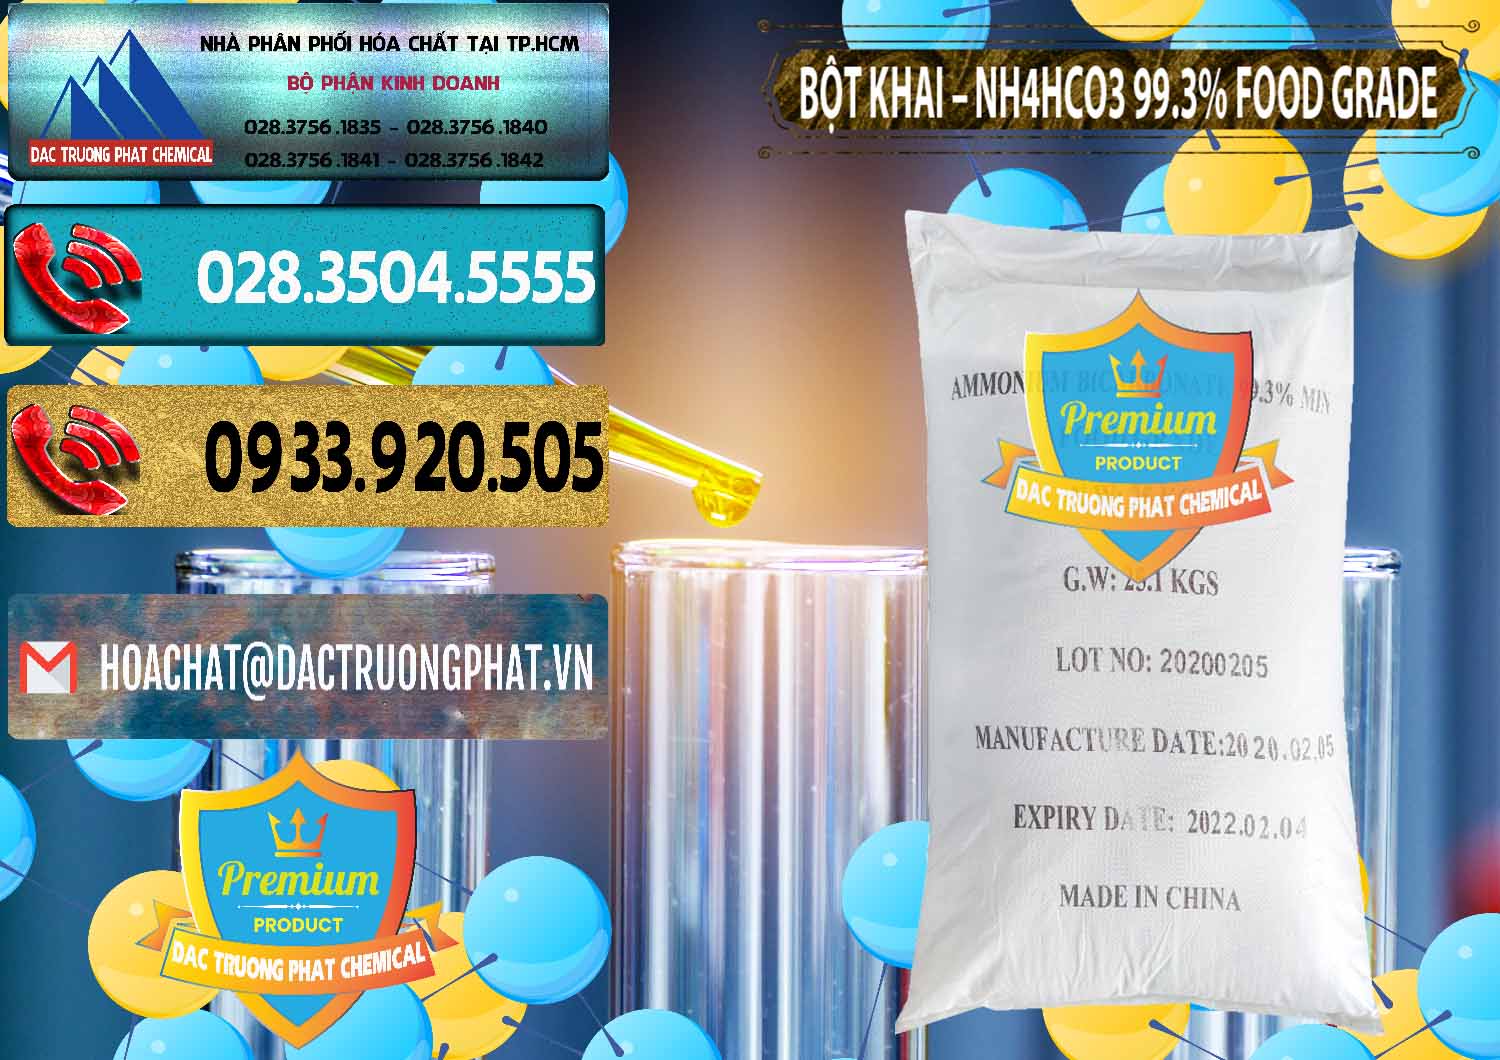 Cty bán _ cung cấp Ammonium Bicarbonate – Bột Khai NH4HCO3 Food Grade Trung Quốc China - 0019 - Nhà nhập khẩu ( cung cấp ) hóa chất tại TP.HCM - hoachatdetnhuom.com